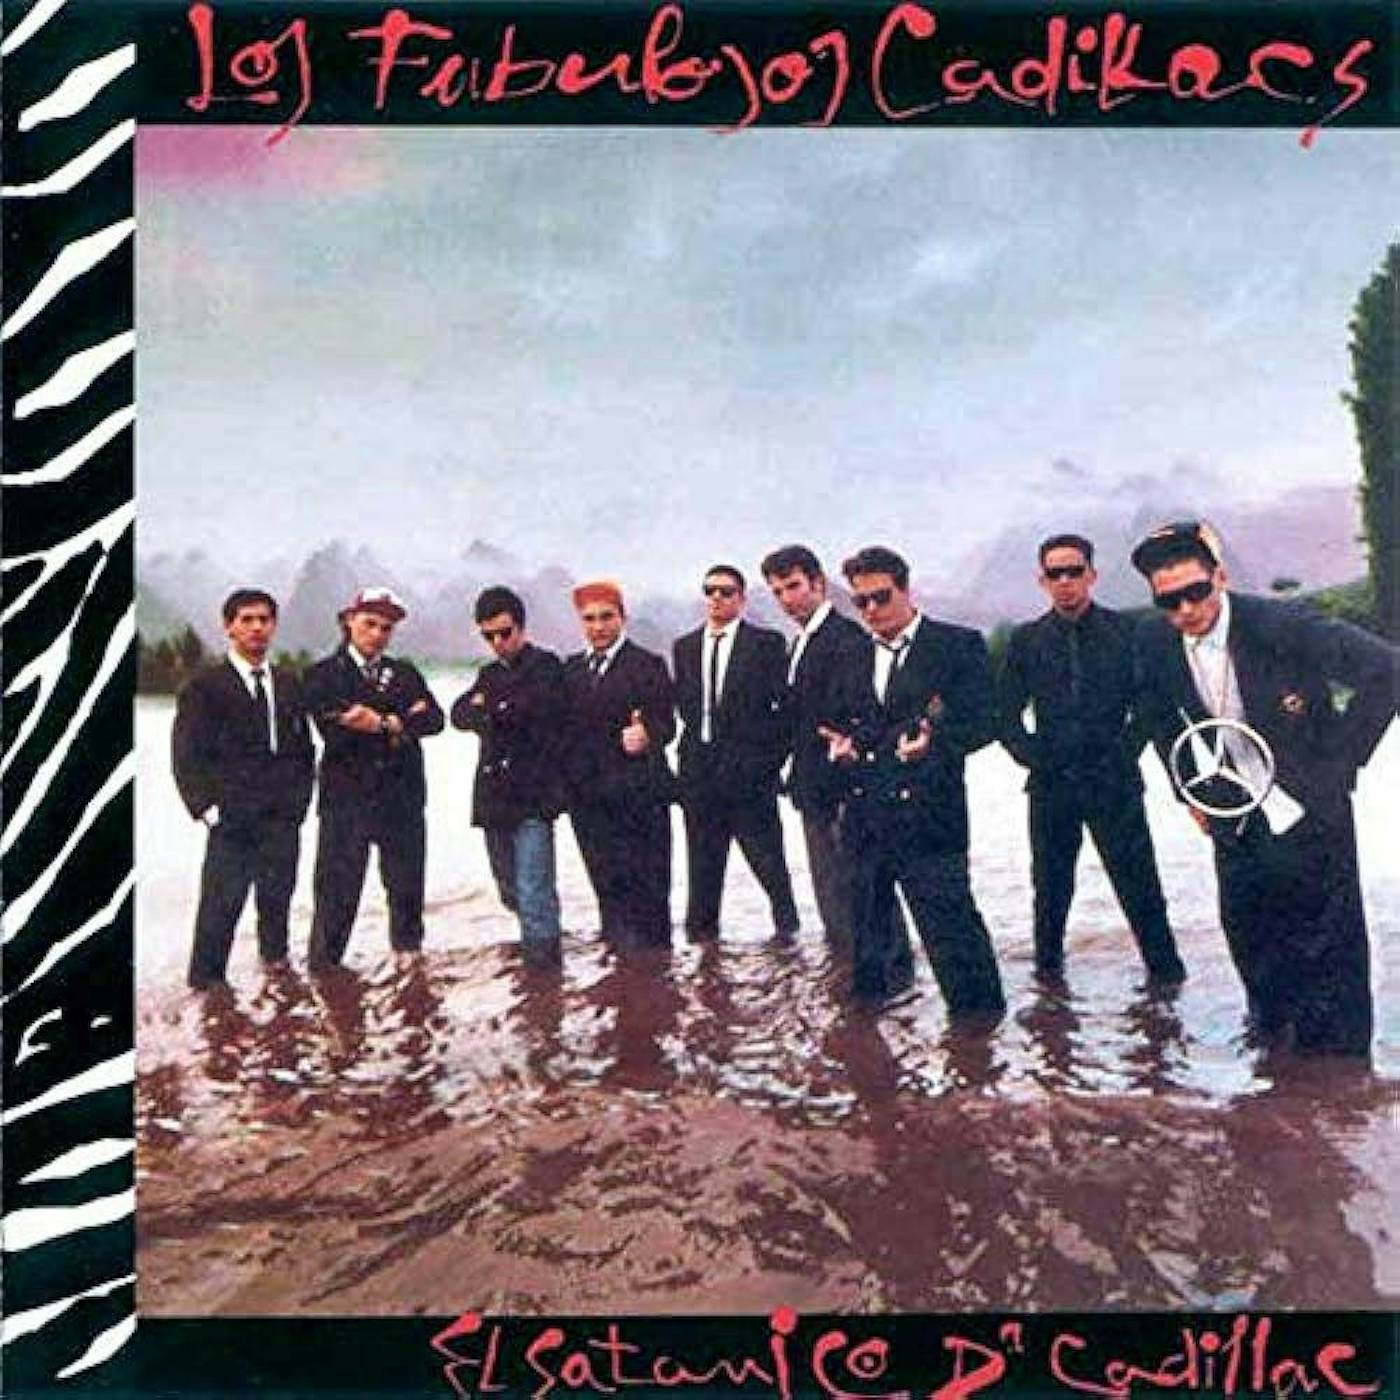 FABULOSOS CADILLACS El Satanico Dr Cadillac Vinyl Record